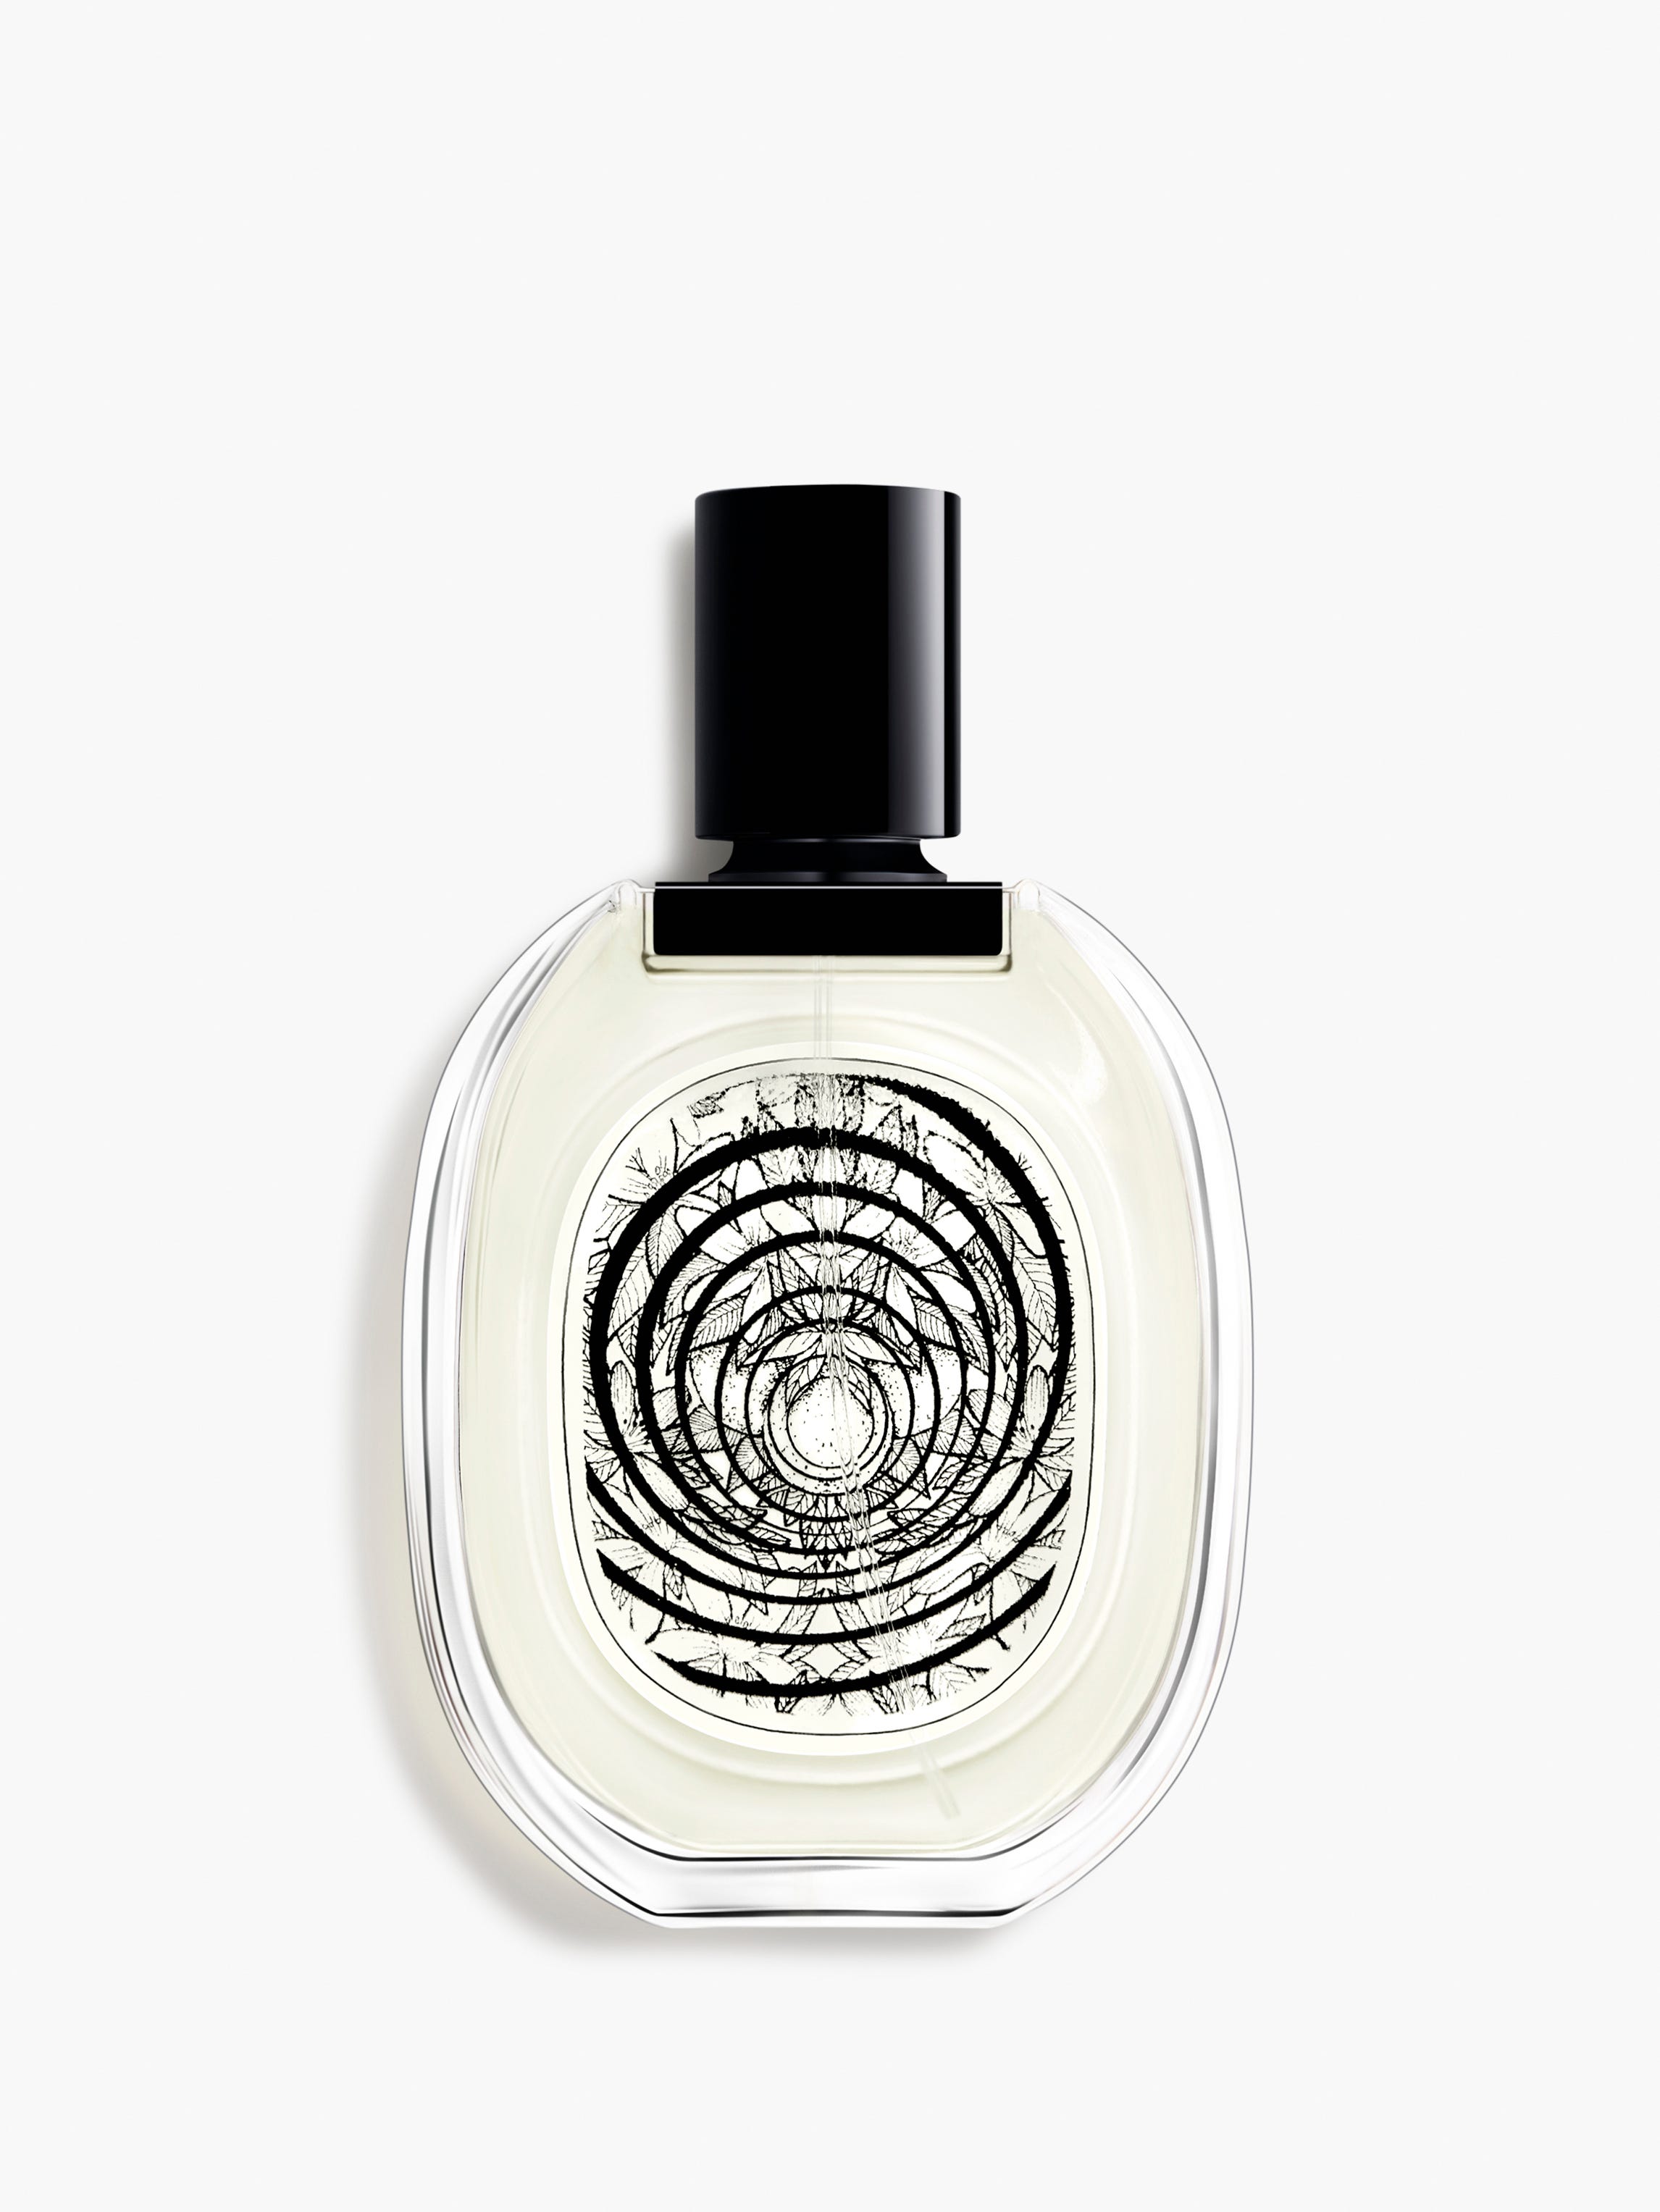 Personal Fragrances | diptyque Paris Official